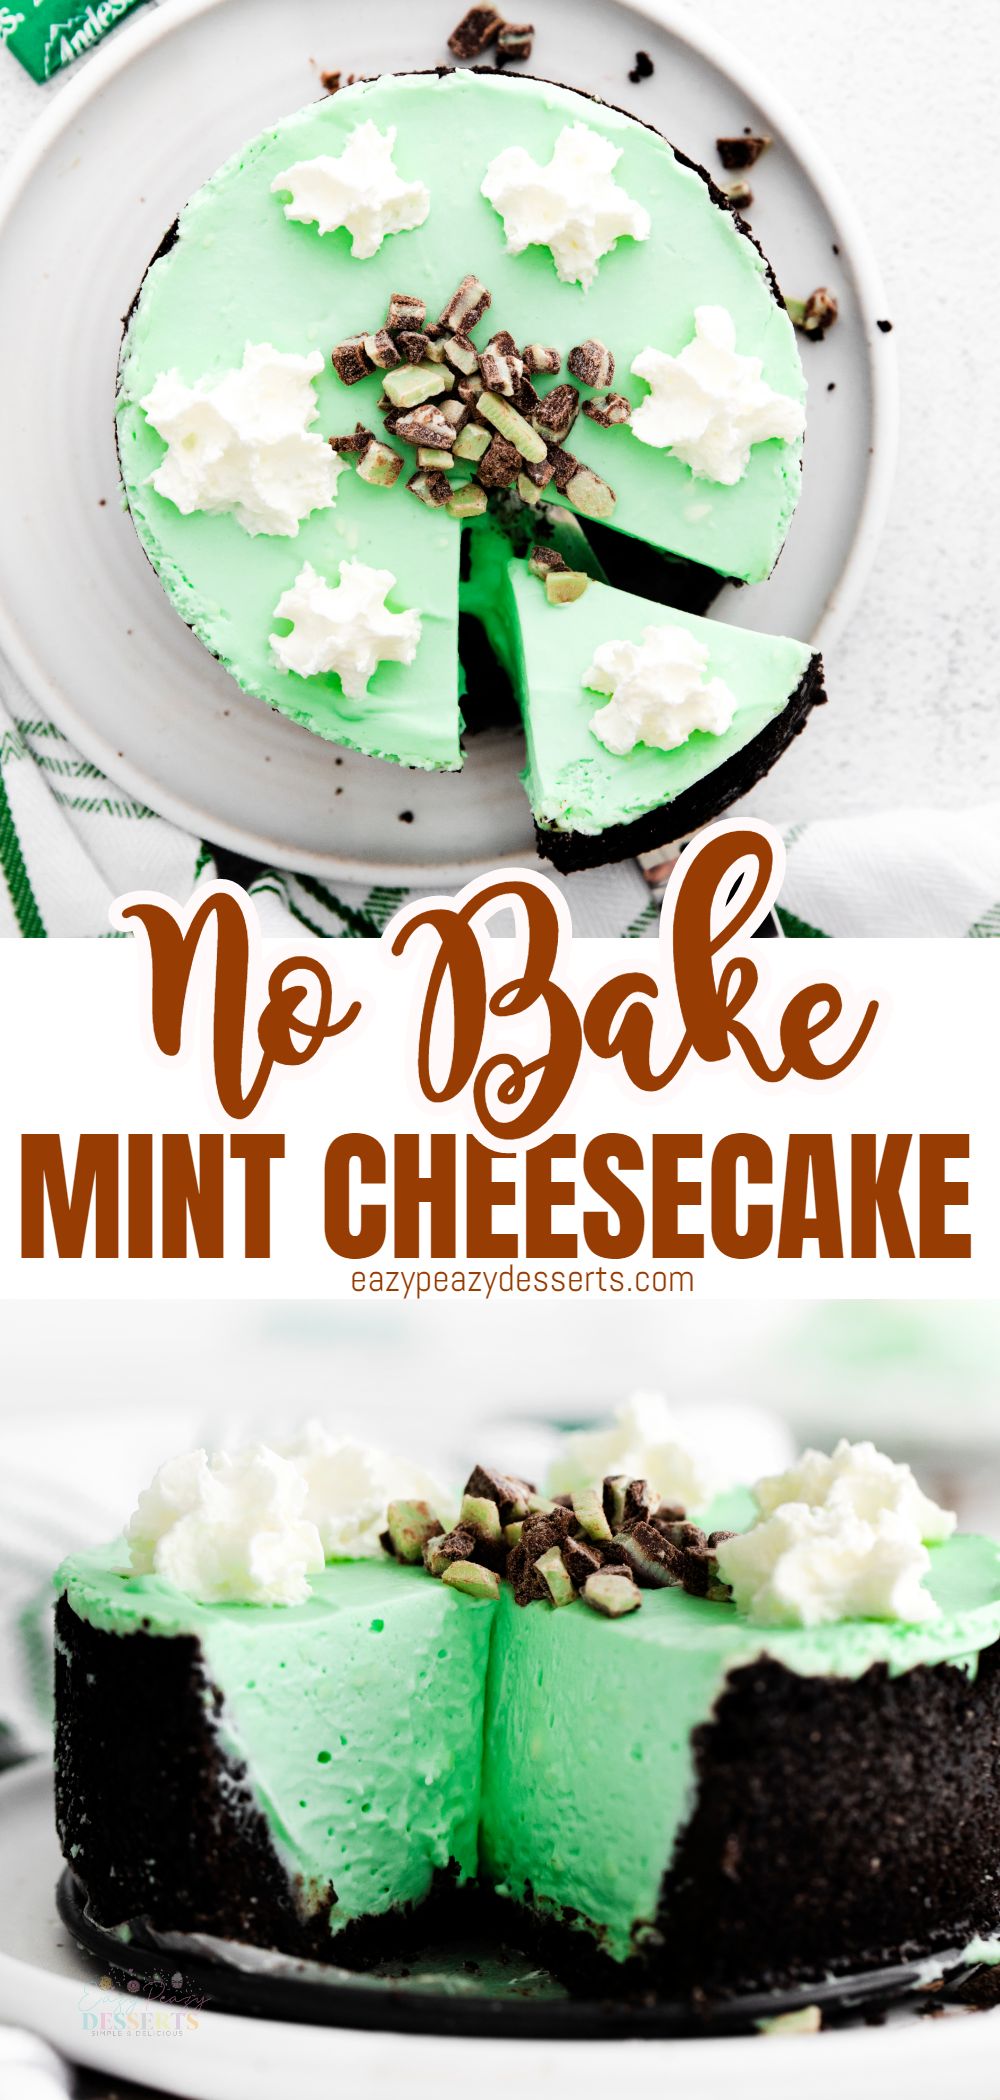 Mint cheesecake